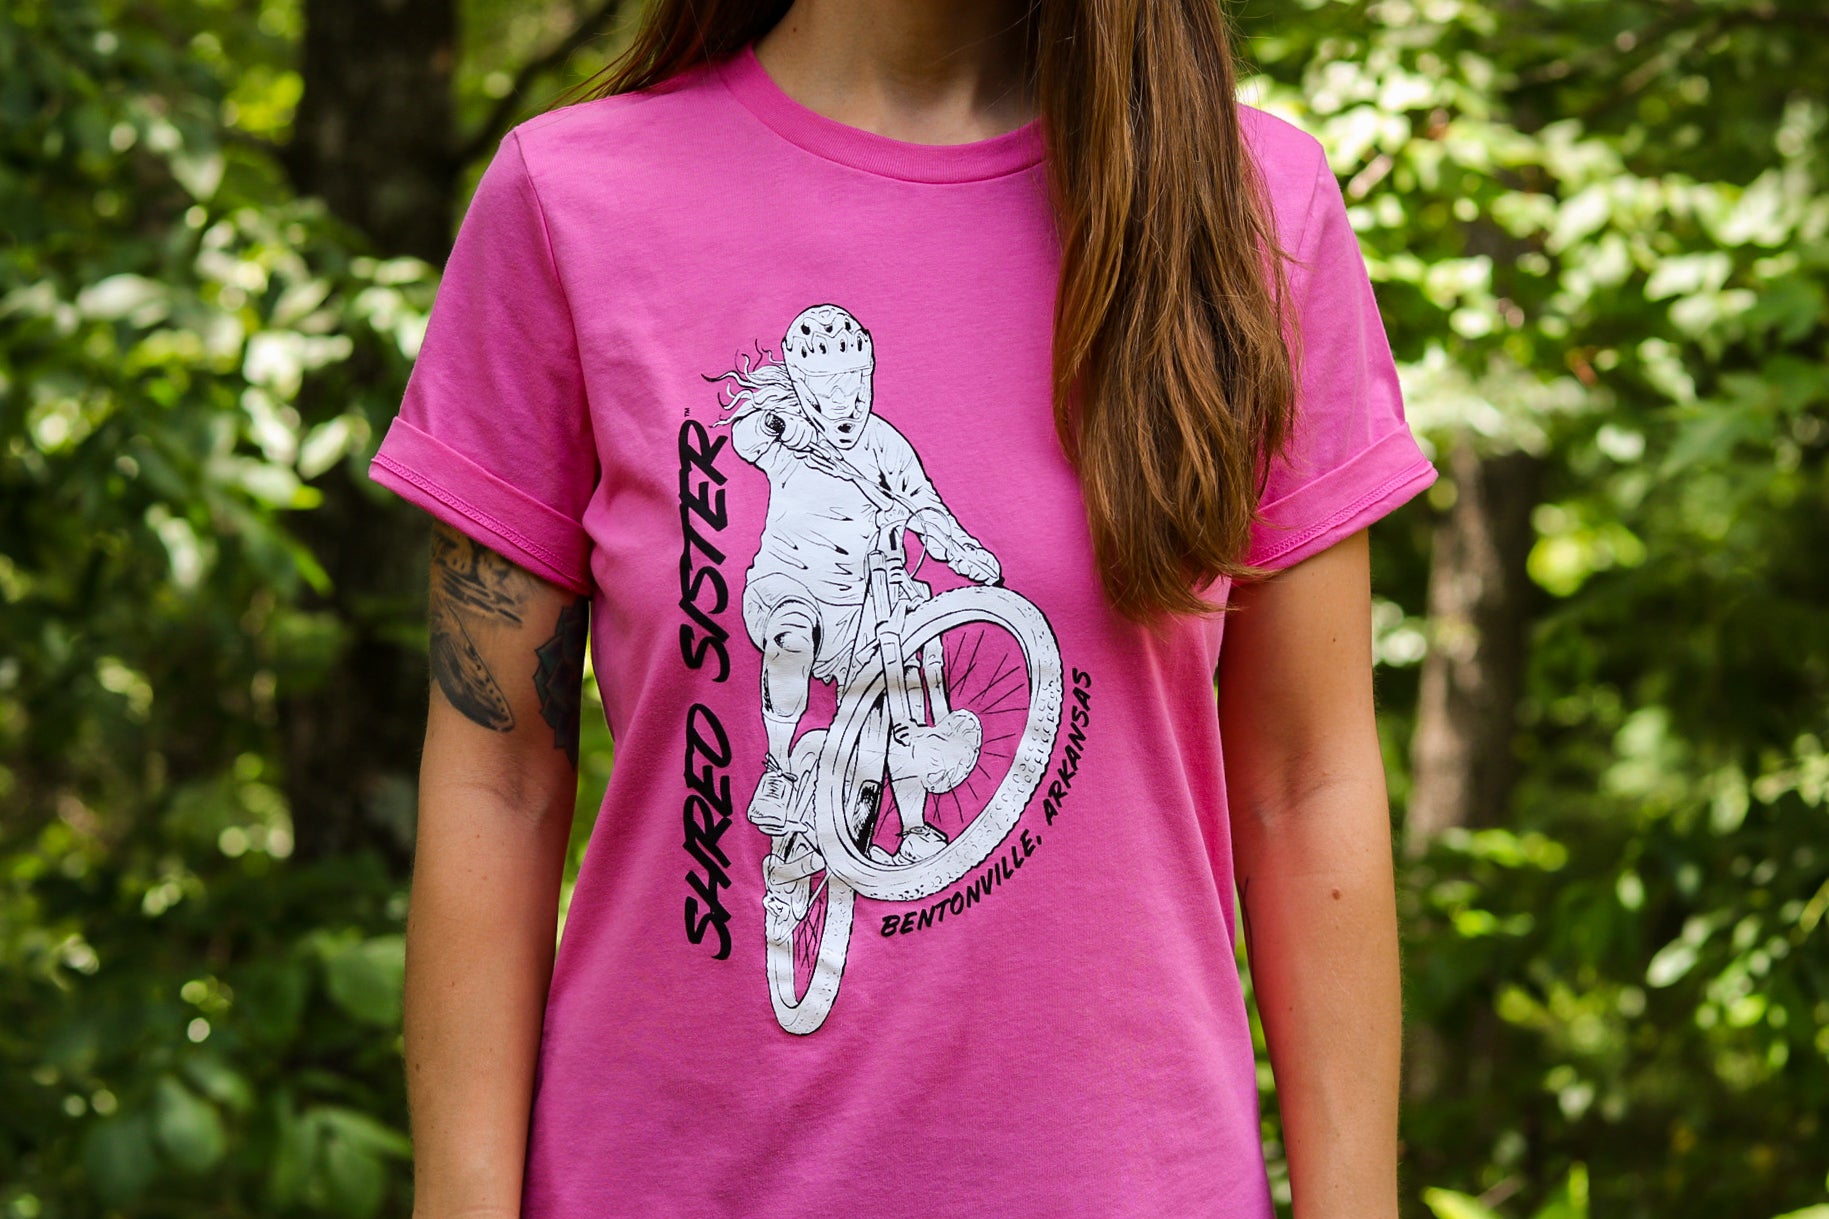 Shred Sister T-Shirt - Pink